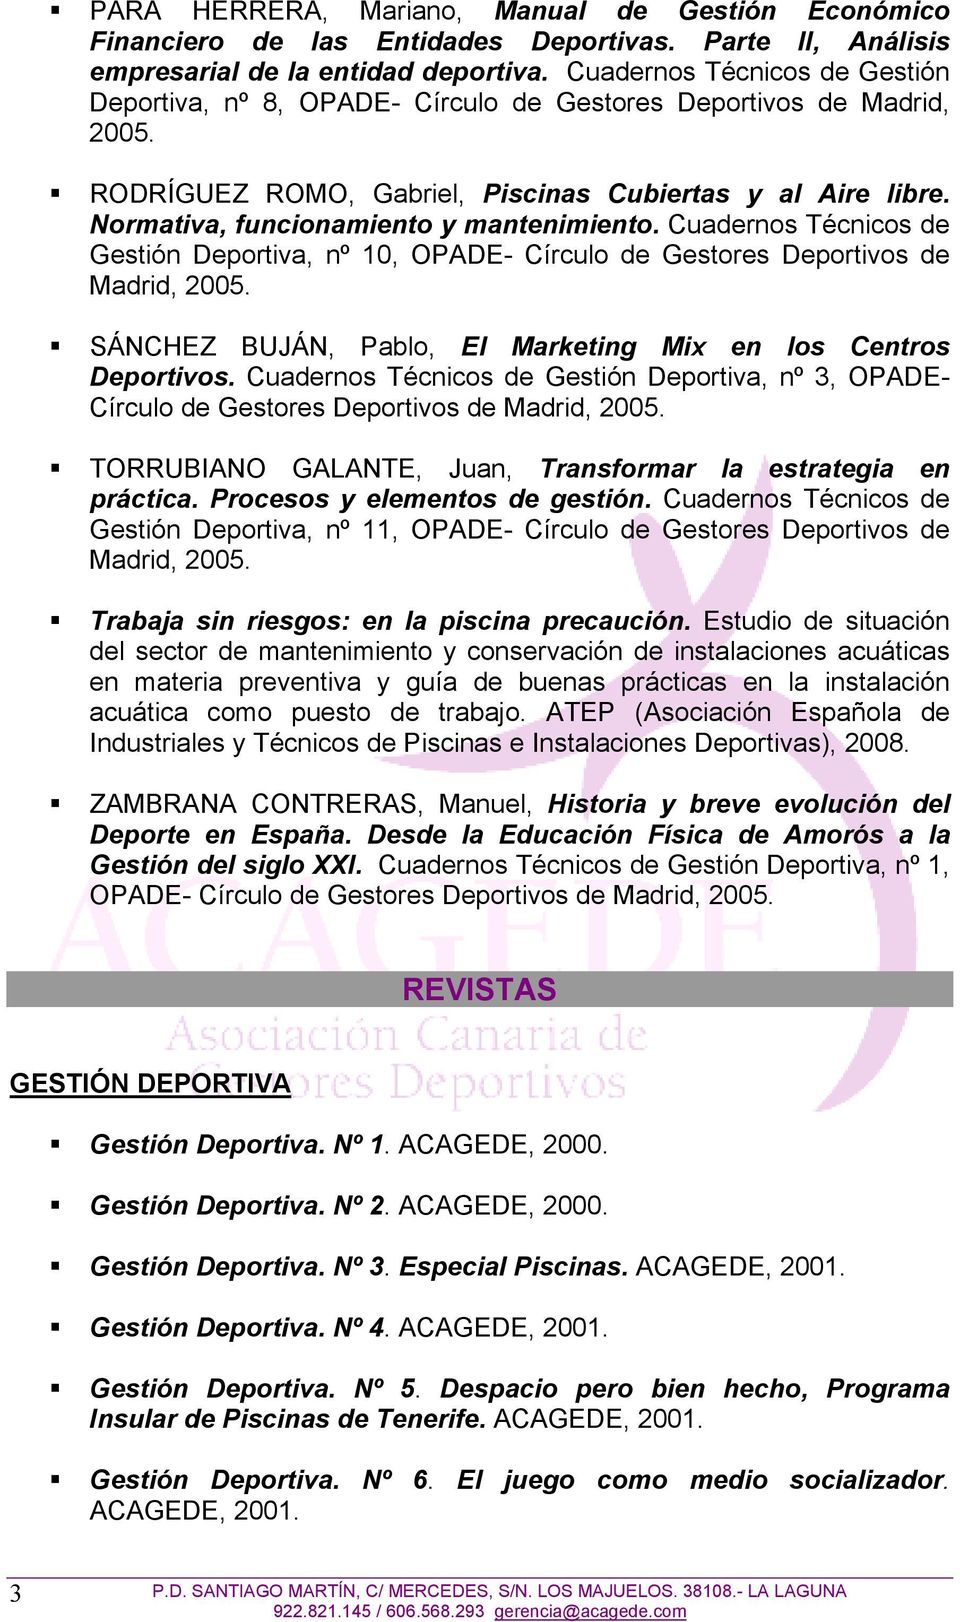 Normativa, funcionamiento y mantenimiento. Cuadernos Técnicos de Gestión Deportiva, nº 10, OPADE- Círculo de Gestores Deportivos de Madrid, 2005.